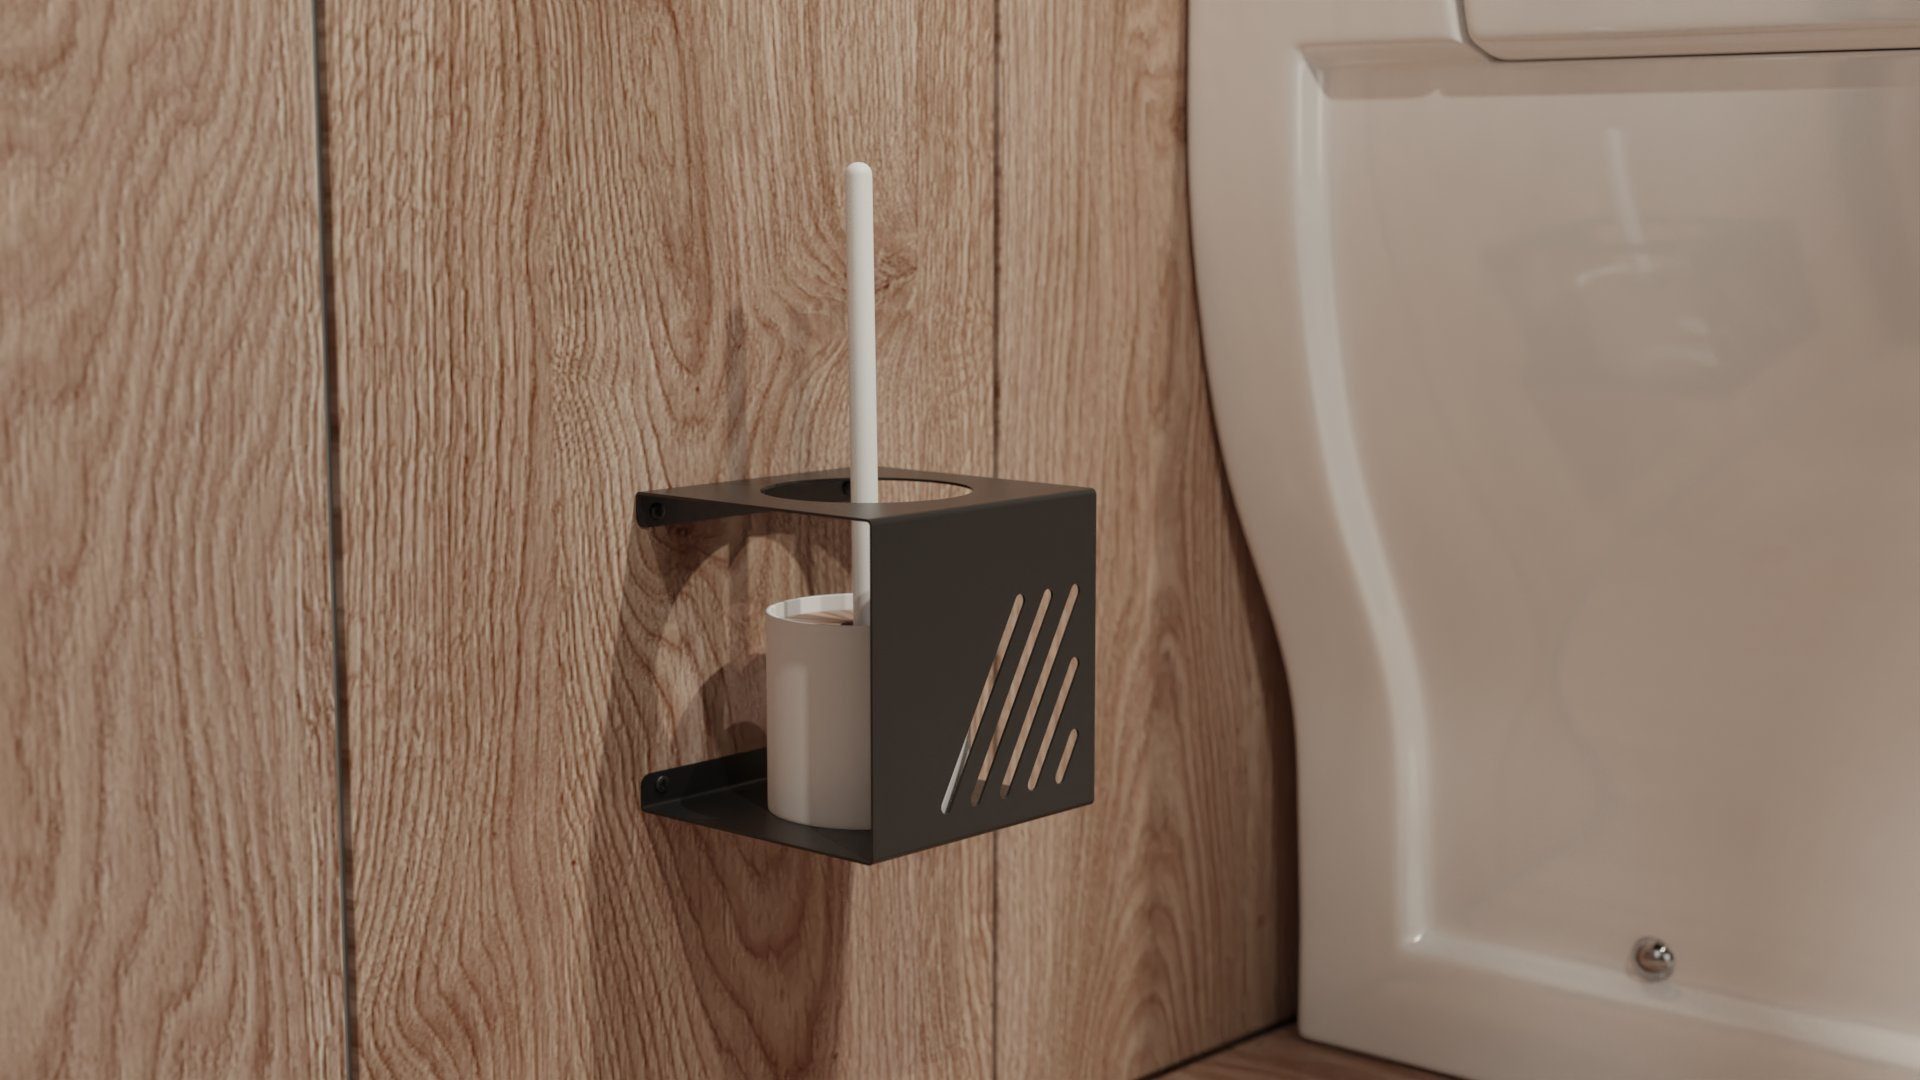 Toilettenbürstenhalter aus WC-Bürstenhalter, Doppelt Aufbewahrung Minimalistischen Manestein Geschliffenem für WC-Garnitur Toilettenbürste manestein Look Edelstahl, im